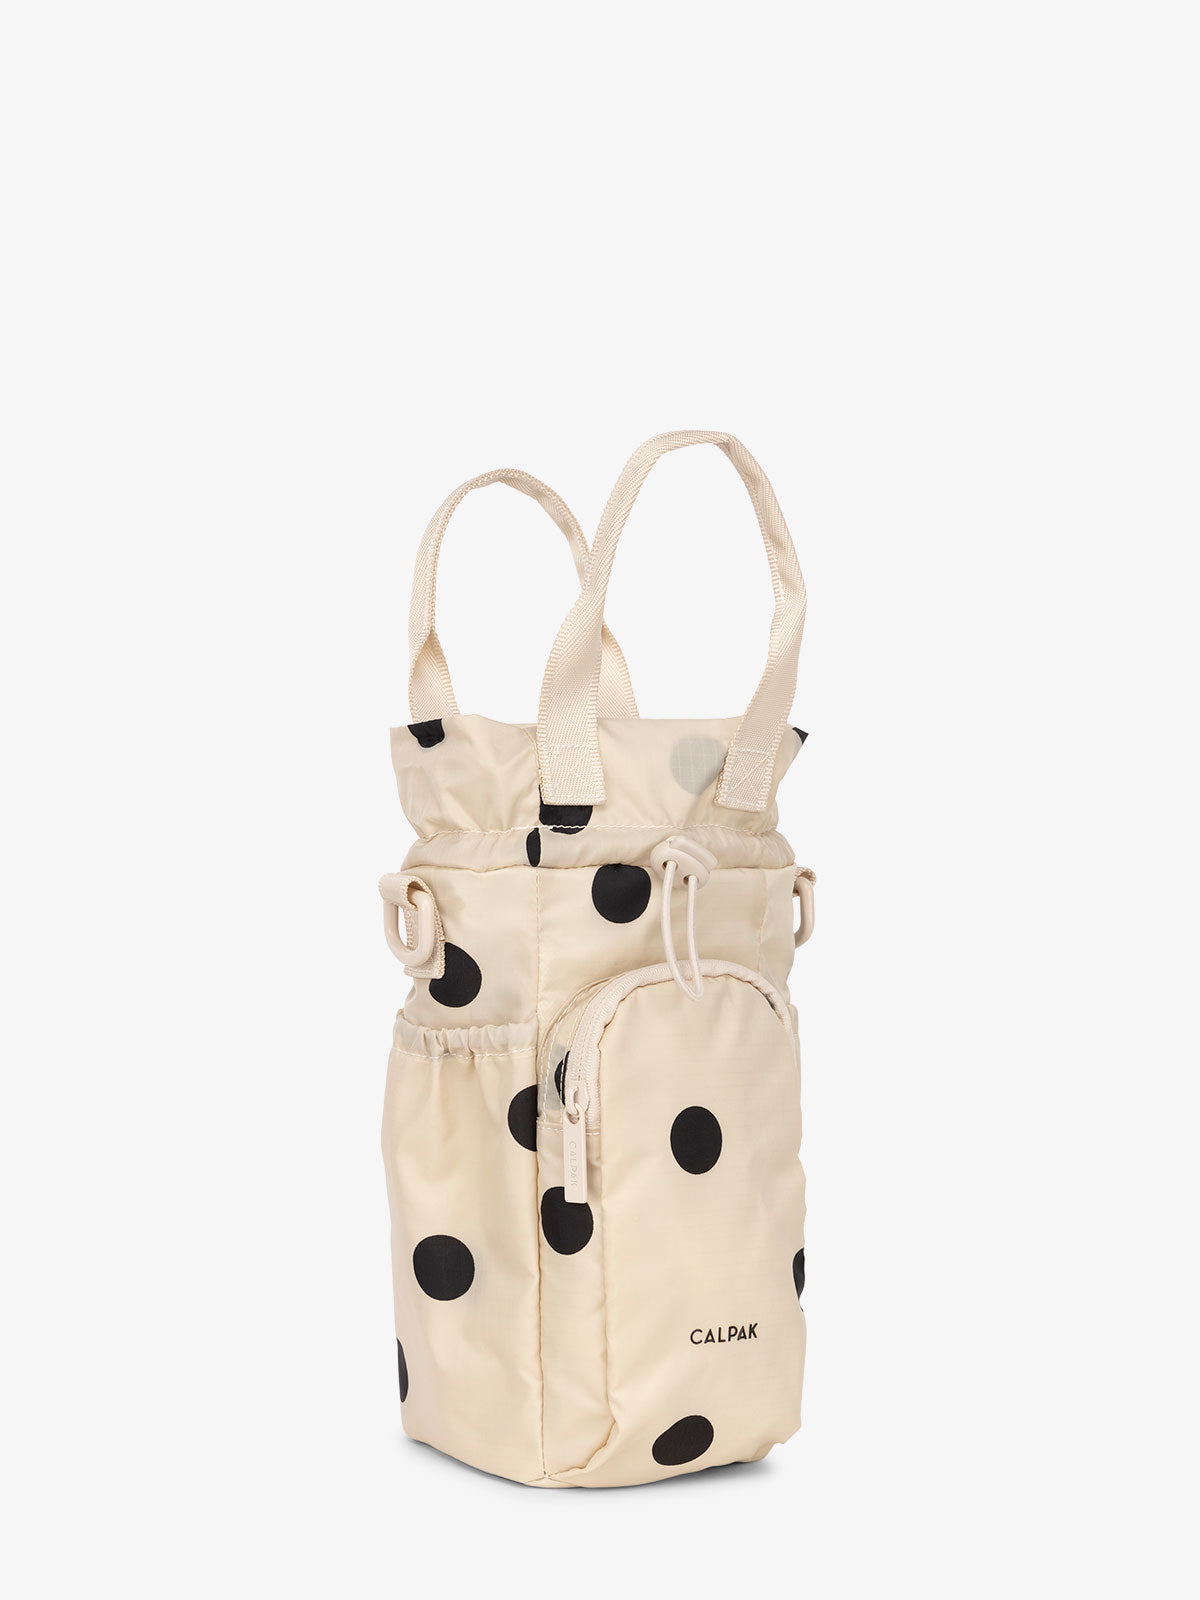 water bottle holder purse in polka dot